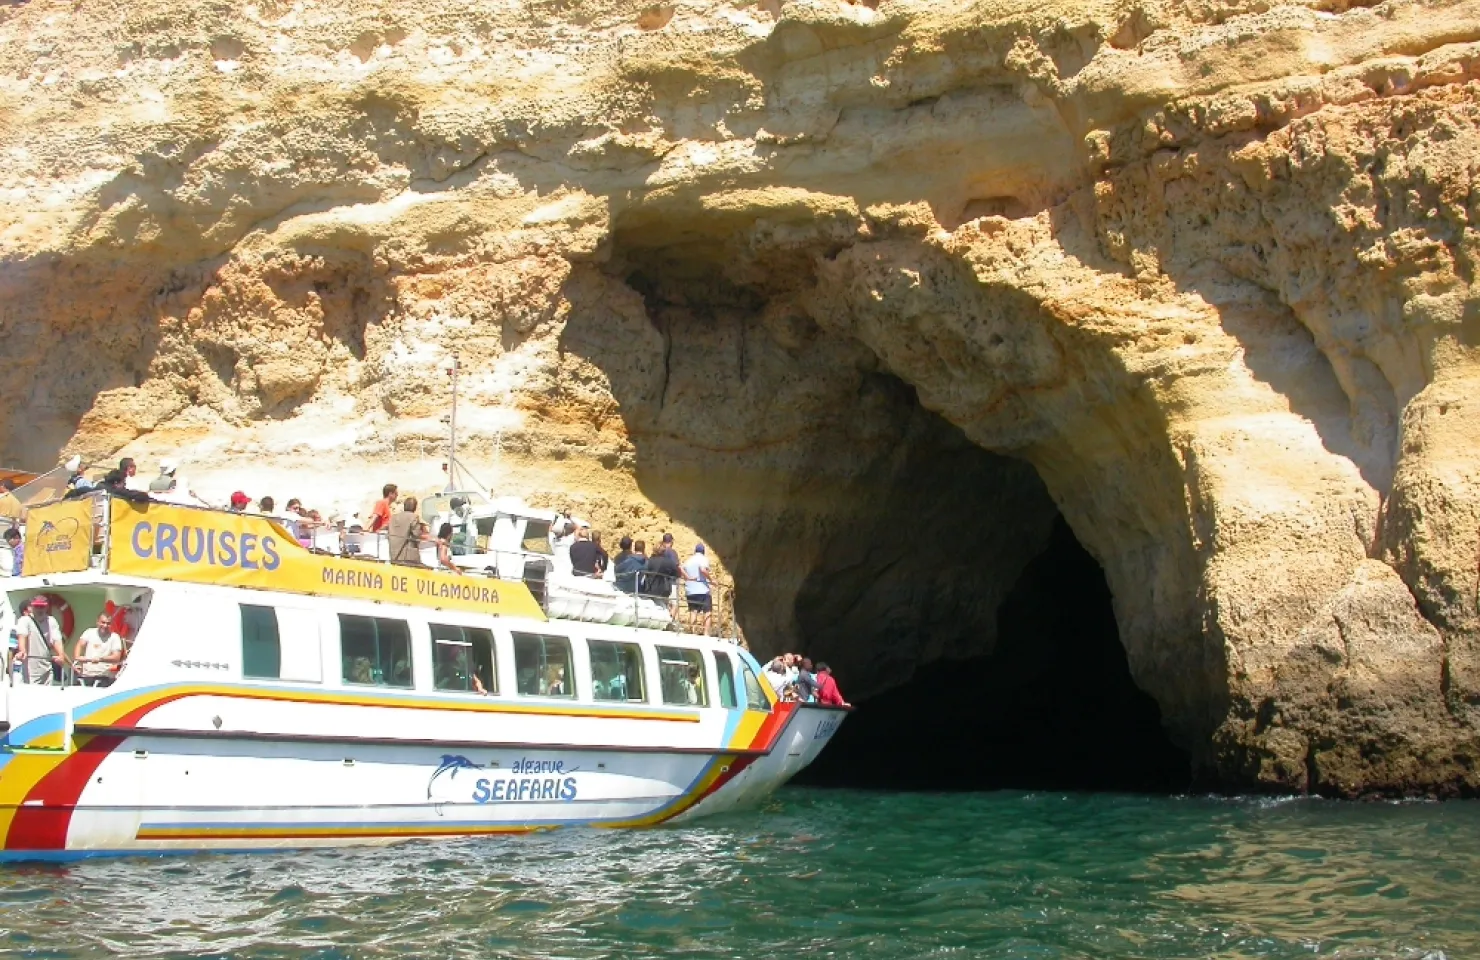 Algarve Sea Cave Tour - Algarve Boat Trips and Tours - 